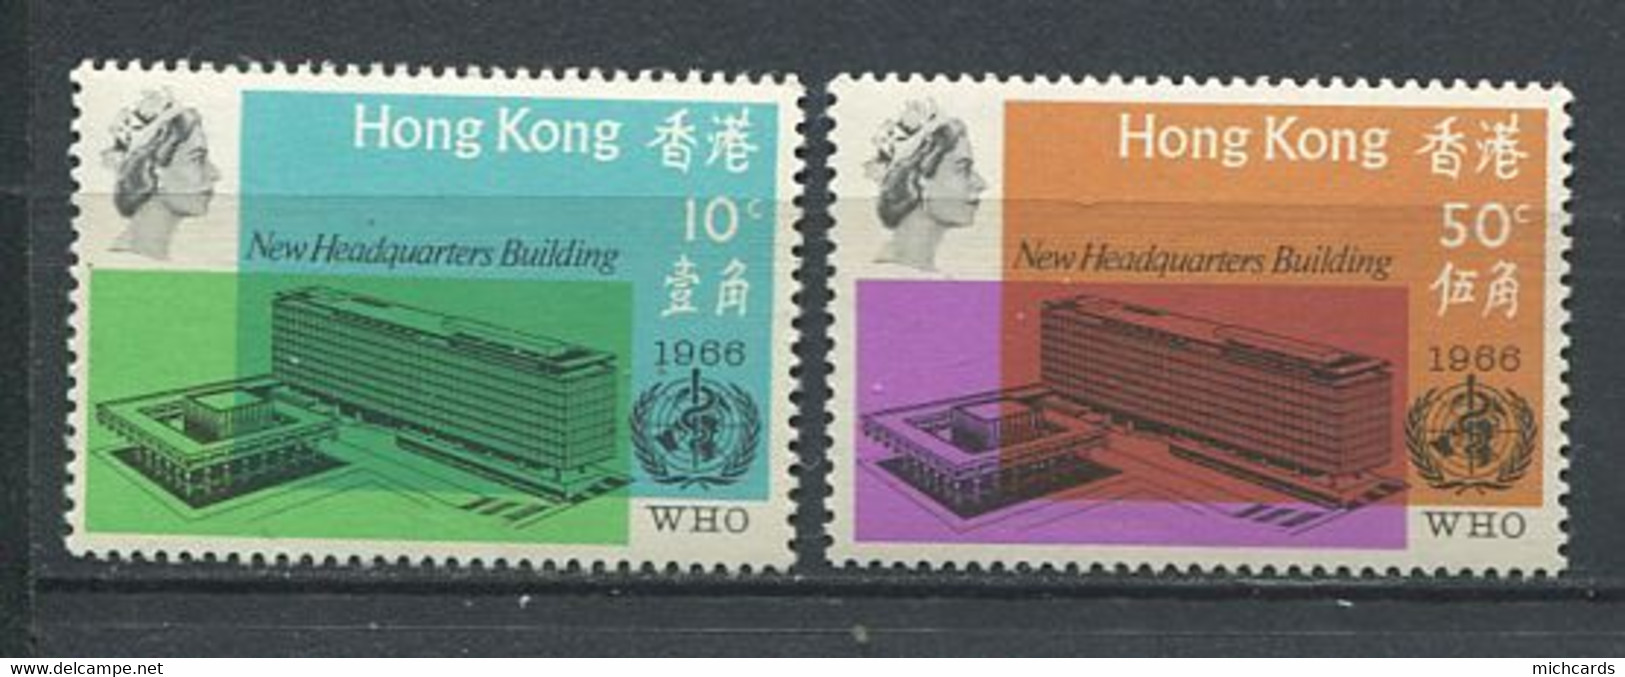 232 HONG KONG 1966 - Yvert 220/21 - Siege Sante A Geneve  - Neuf ** (MNH) Sans Trace De Charniere - Ungebraucht